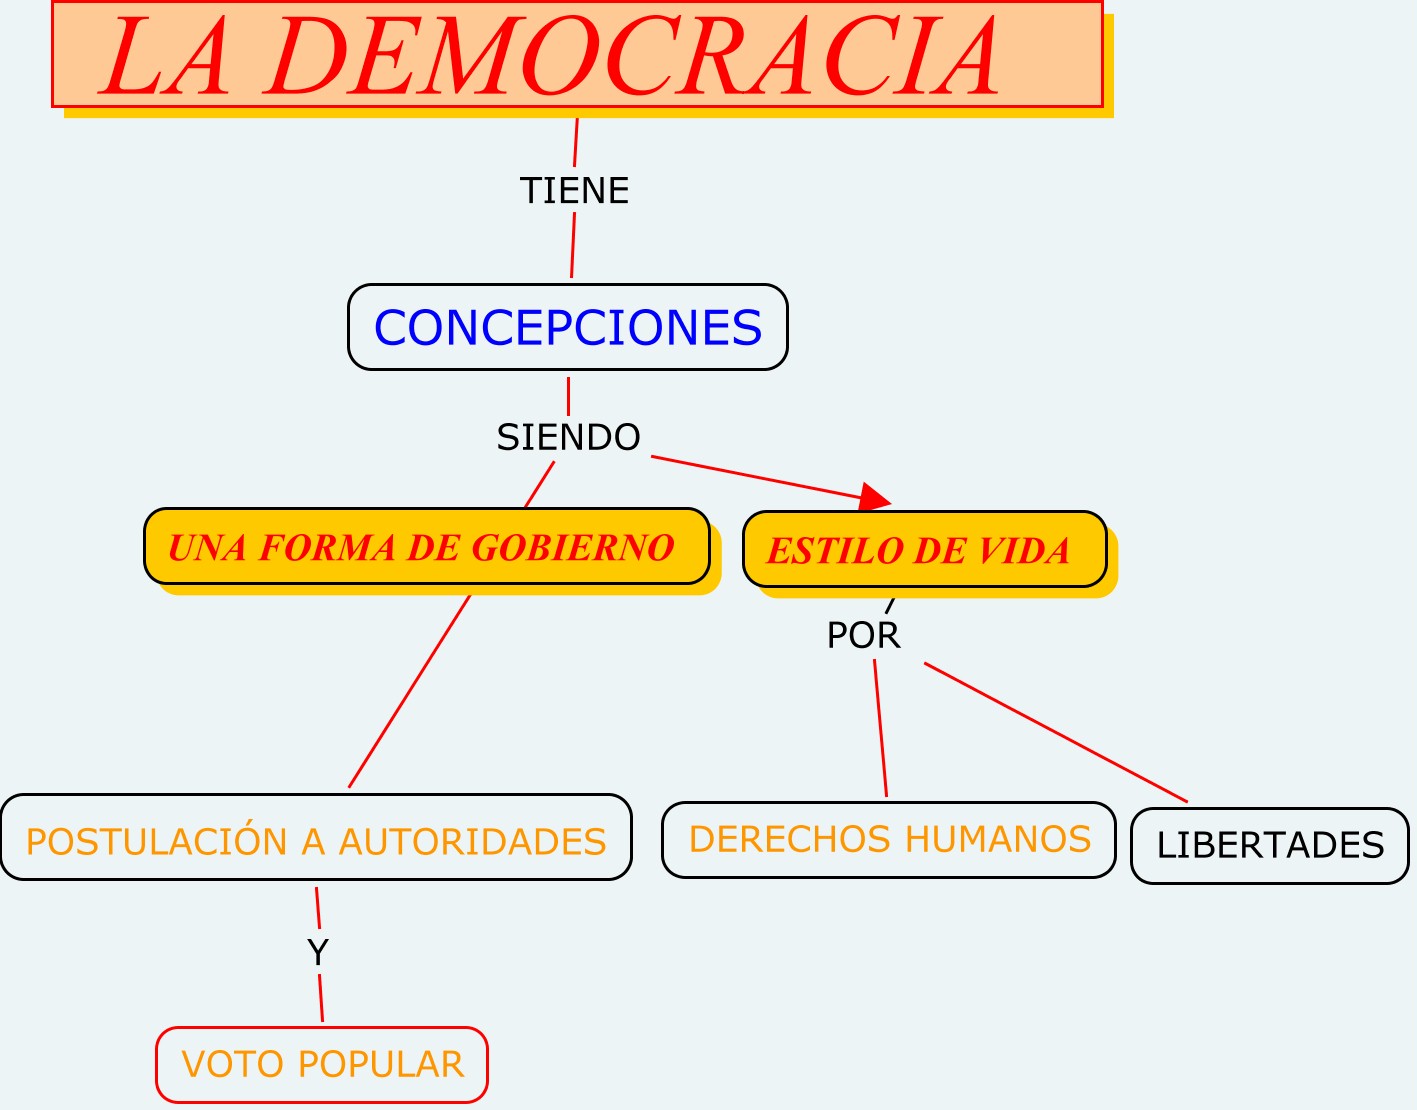 Conociendo Las Partes De La Democracia Mapa Mental Cibertareas Images